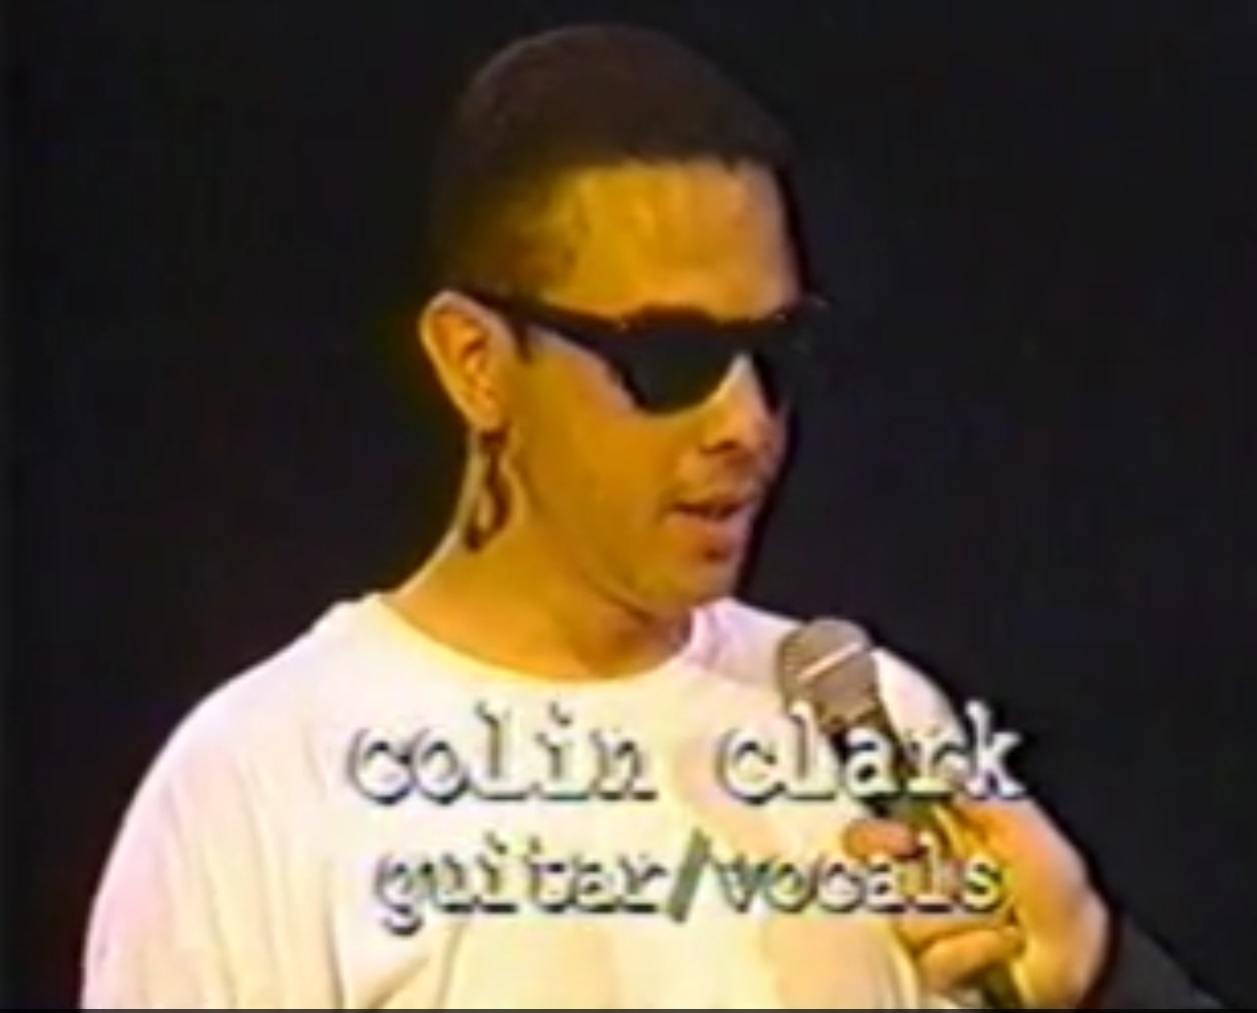 Colin Clark